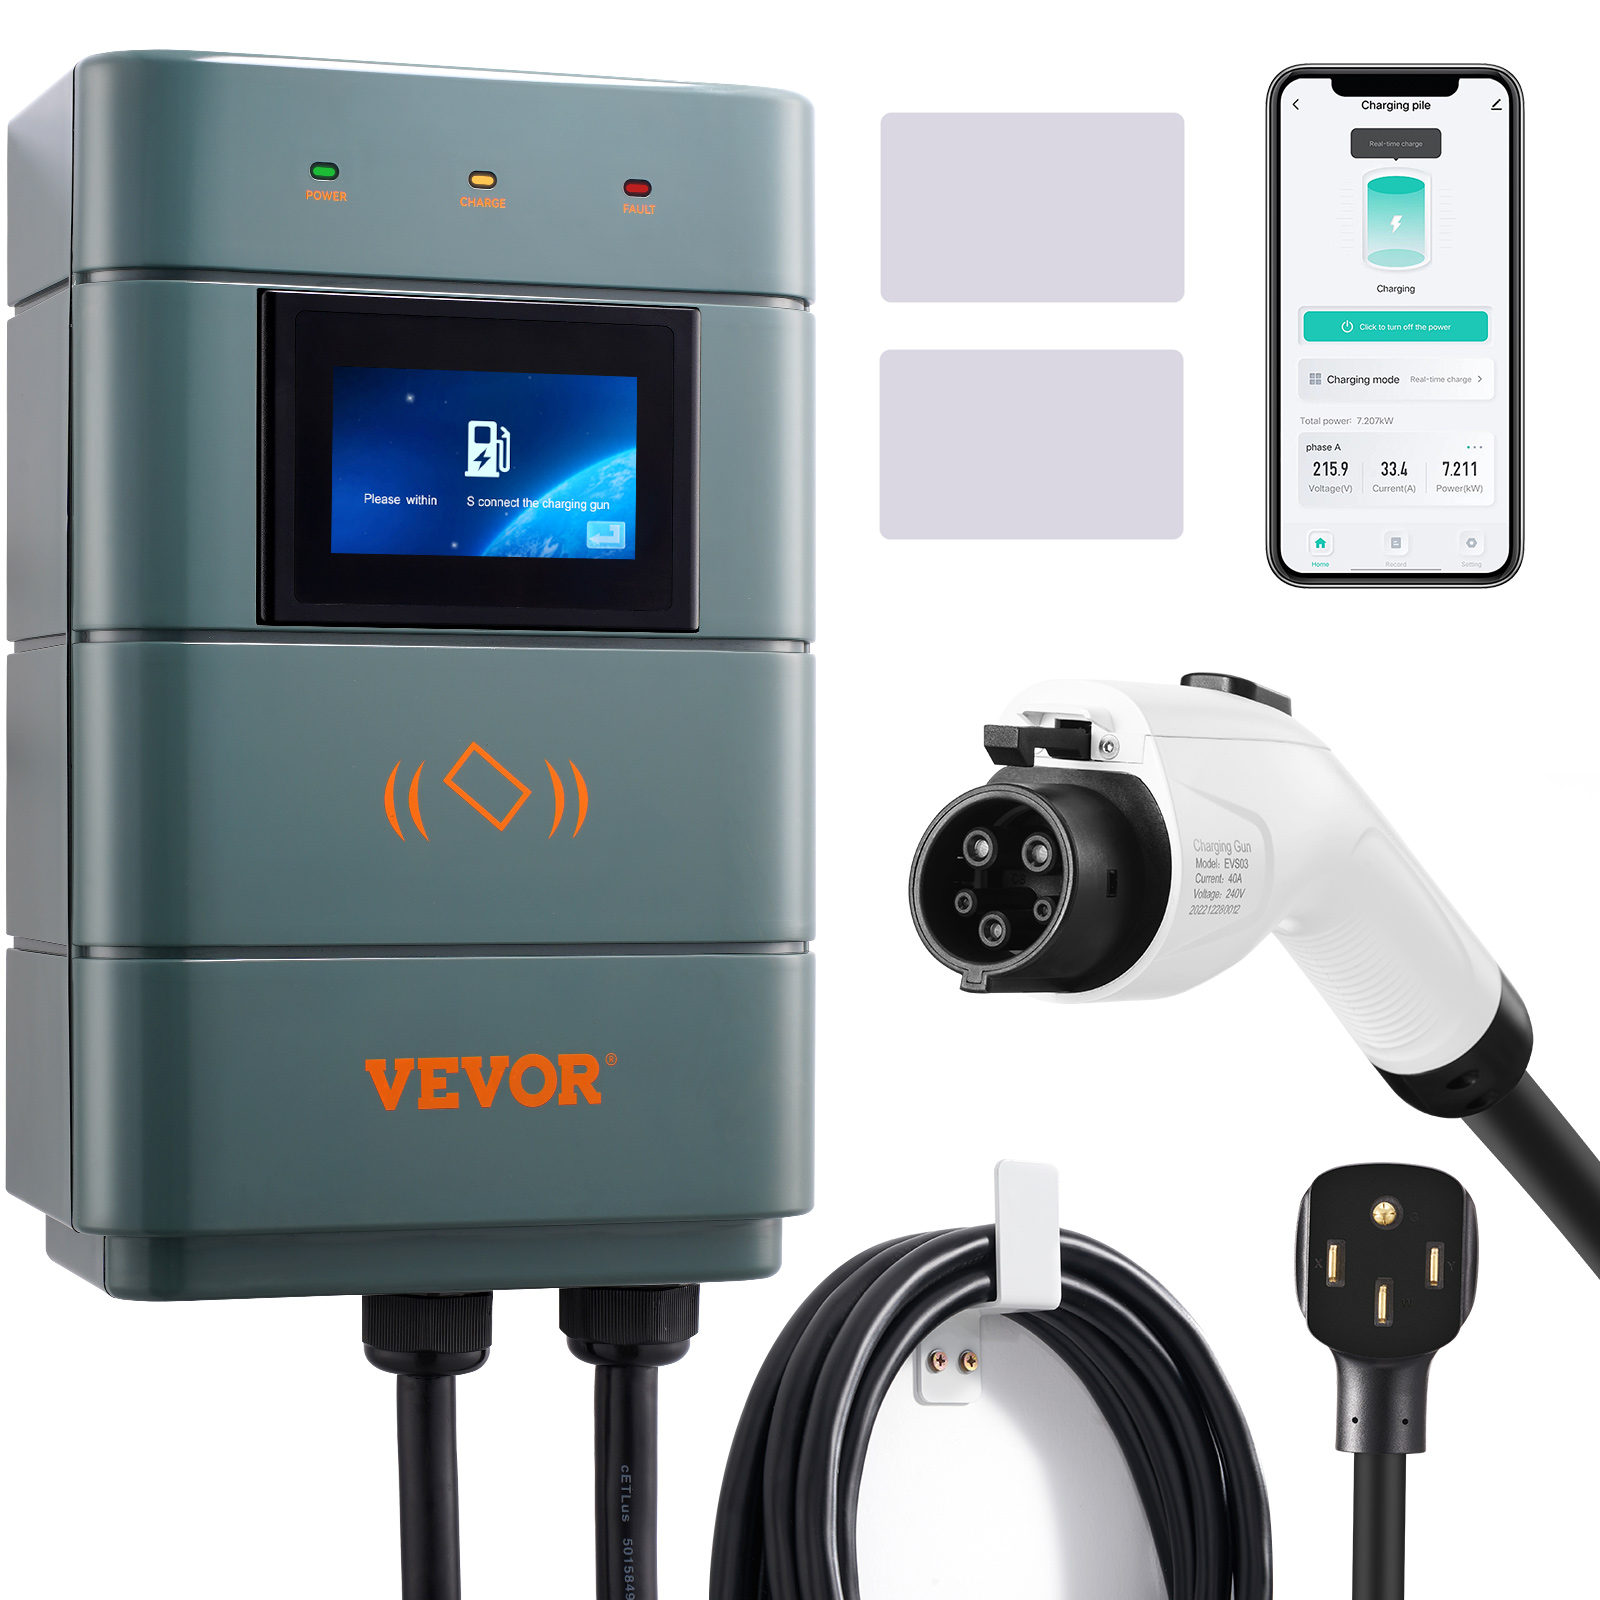 VEVOR Level 2 Electric Vehicle Charging Station, 0-48A Adjustable, 11.5 KW 240V NEMA 6-50 Plug Smart EV Charger with Wifi, 24-Foot TPE Charging